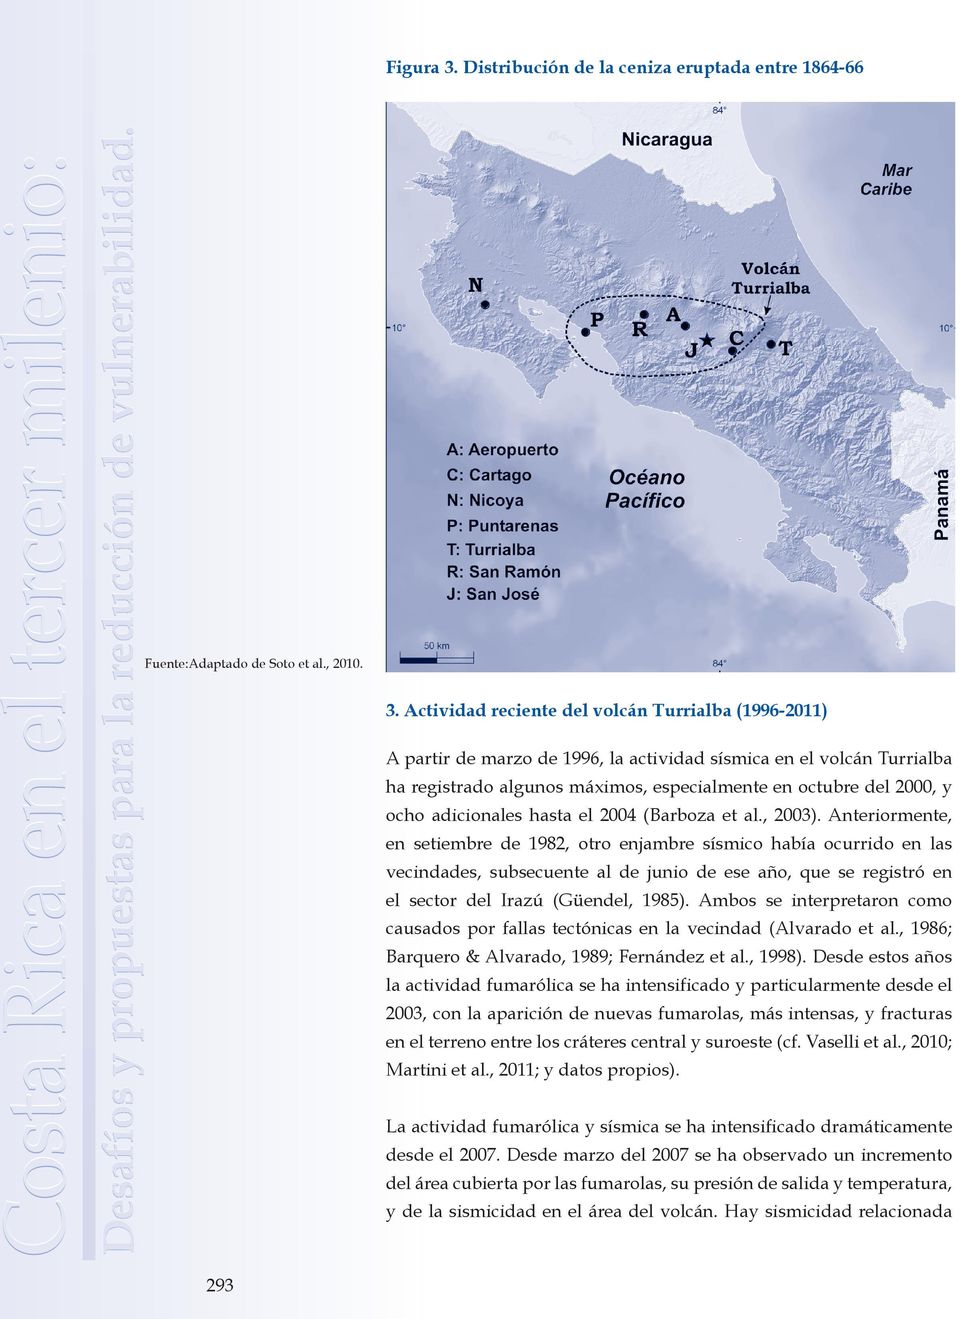 Actividad reciente del volcán Turrialba (1996-2011) A partir de marzo de 1996, la actividad sísmica en el volcán Turrialba ha registrado algunos máximos, especialmente en octubre del 2000, y ocho